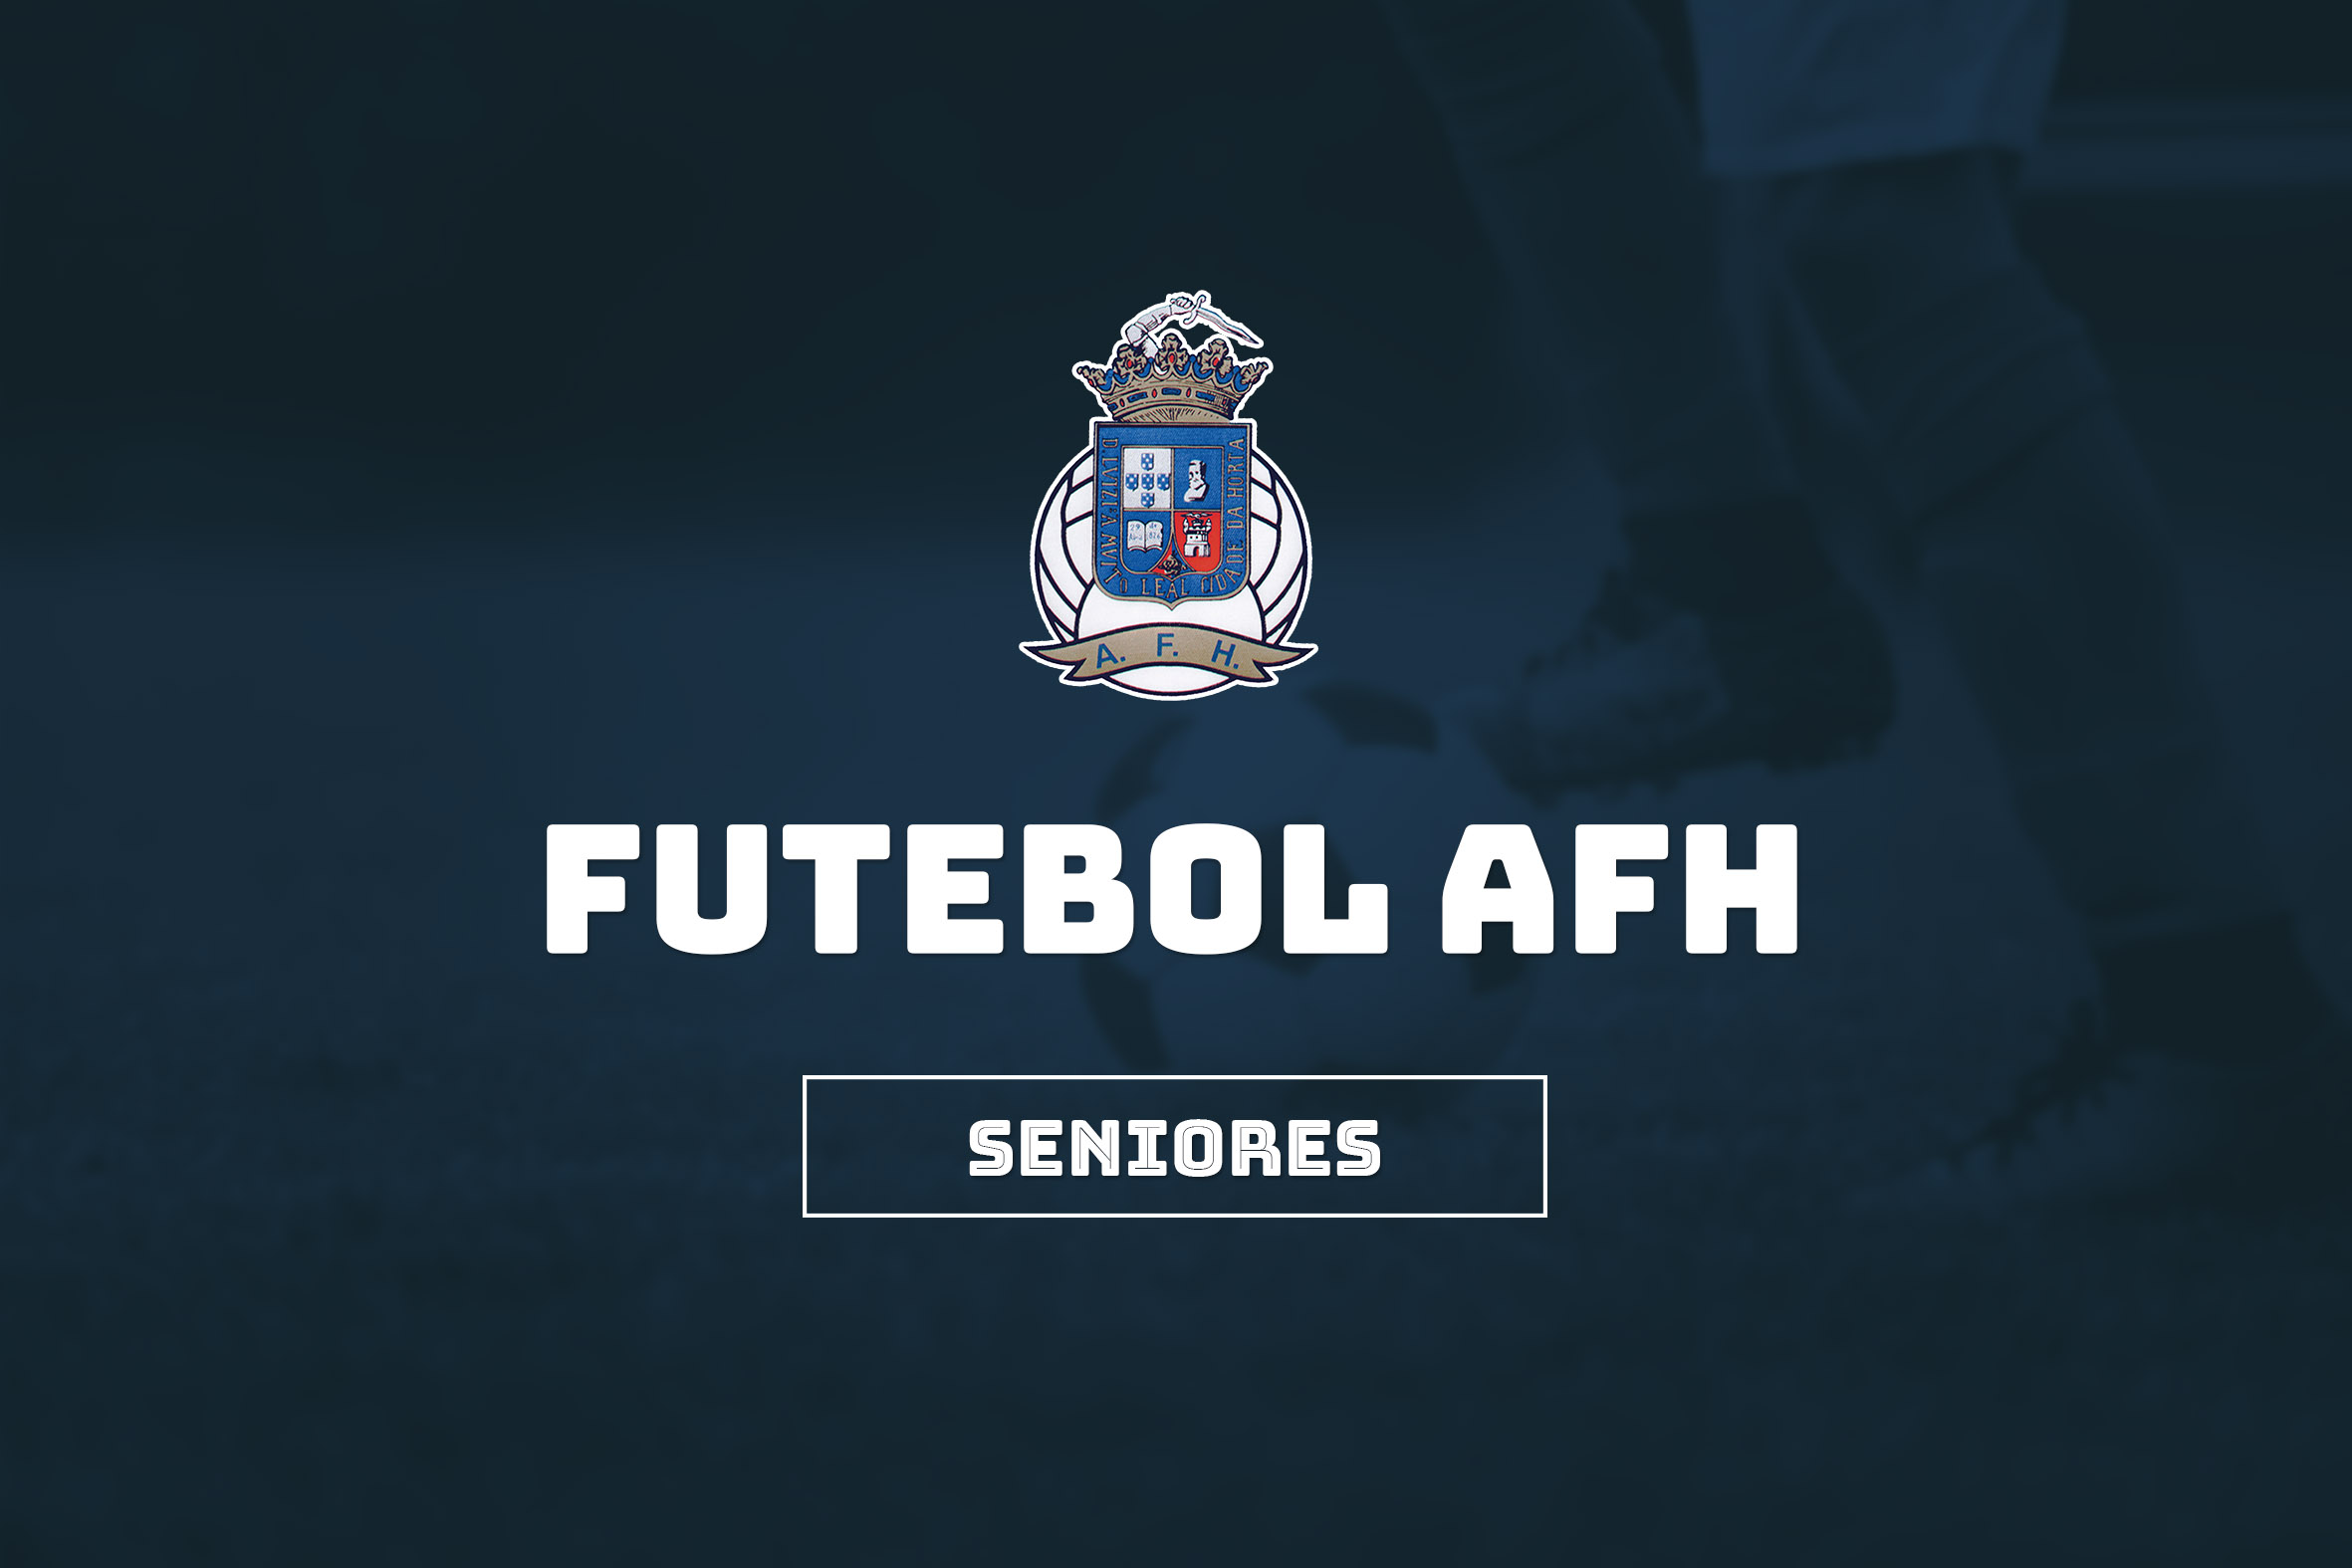 Clubes filiados AFH – Seniores – Futebol | Resultados fim de semana